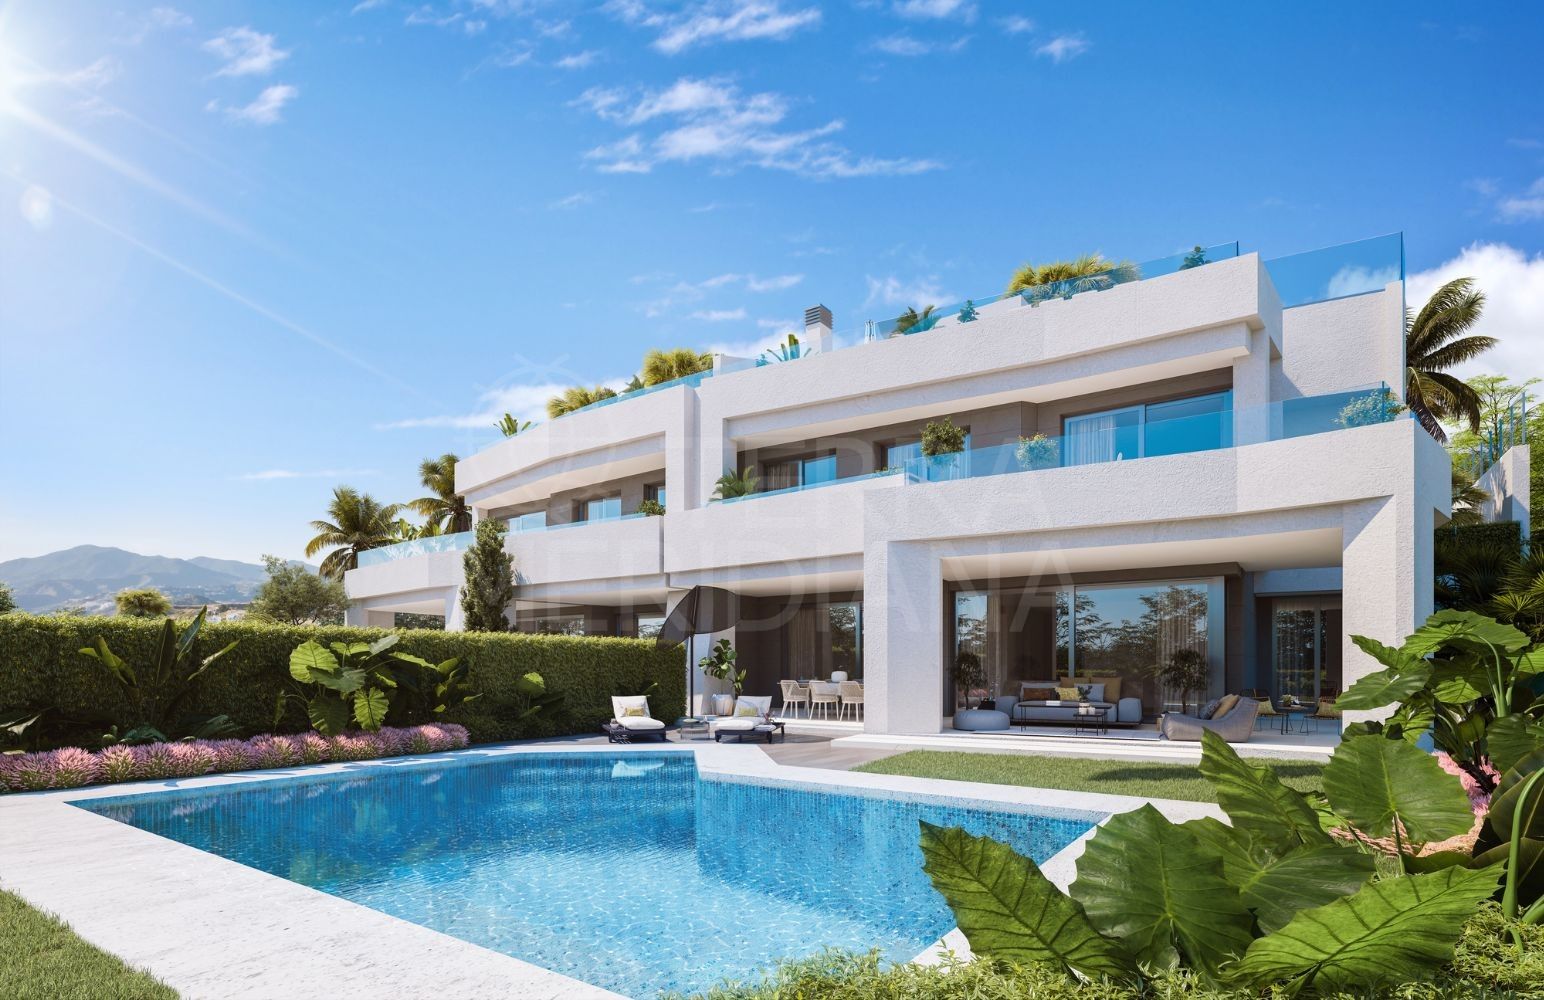 Casa adosada de lujo sobre plano con piscina privada en venta en Soul Marbella, Santa Clara